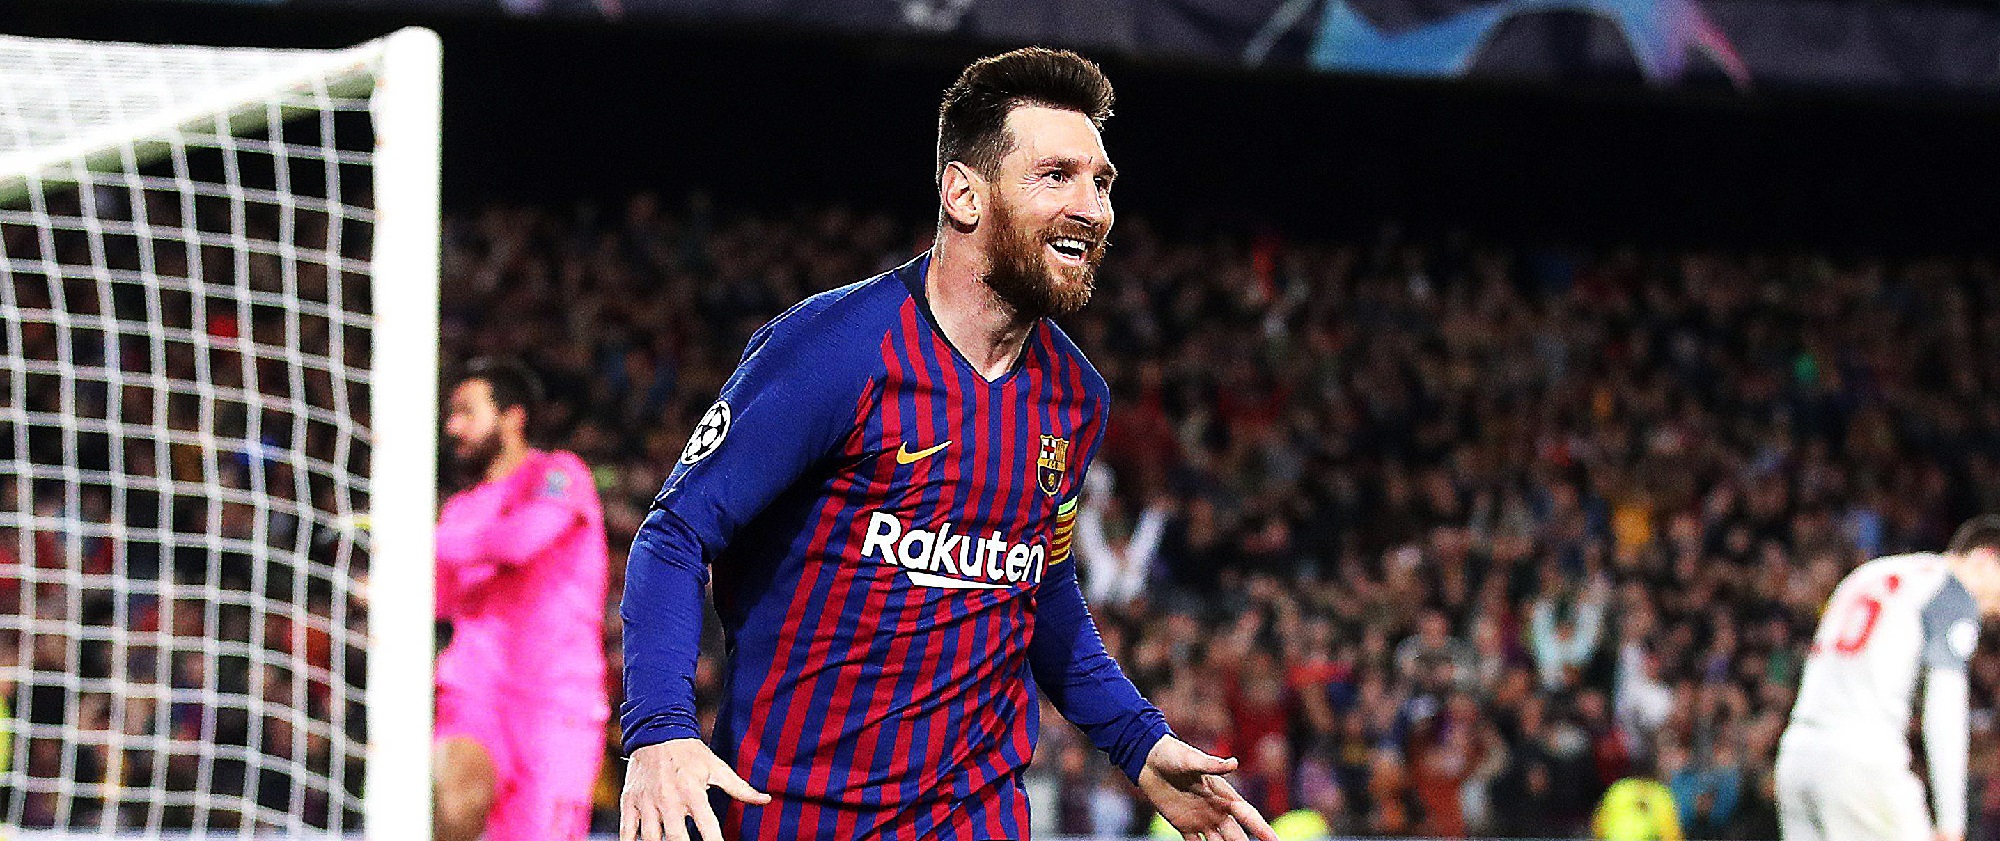 Messi anunció que seguirá jurando en el Barcelona: "Jamás iría a juicio contra el club de mi vida"